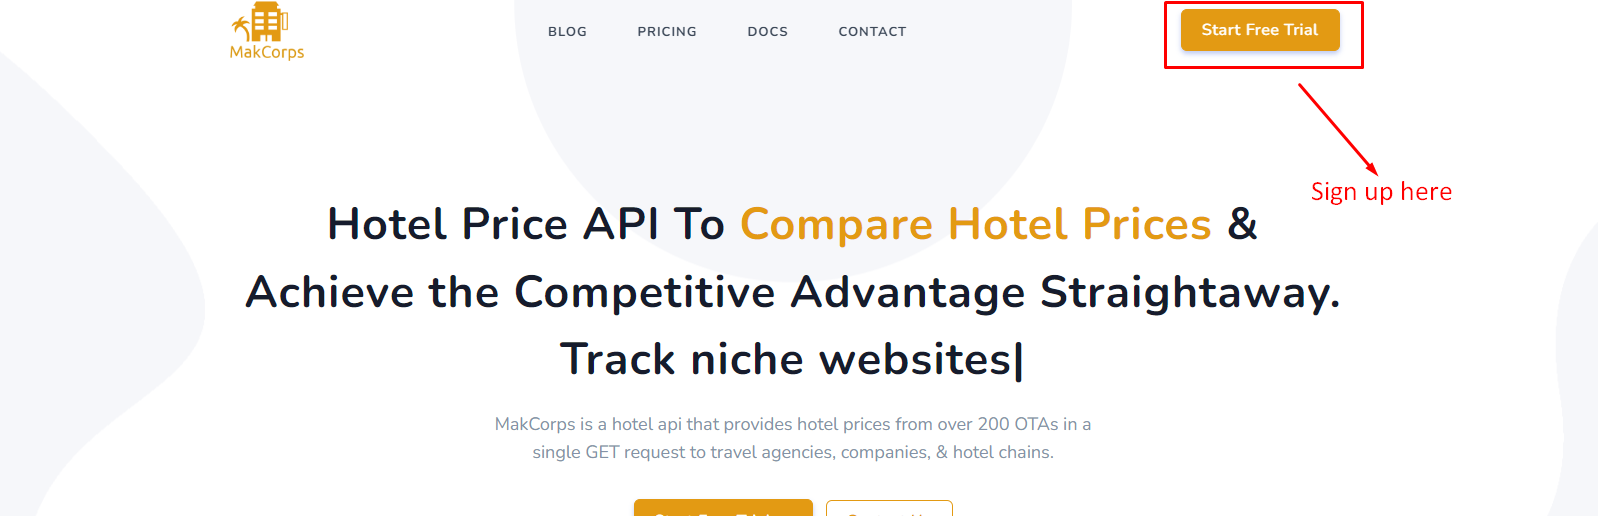 Makcorps Hotel Price API